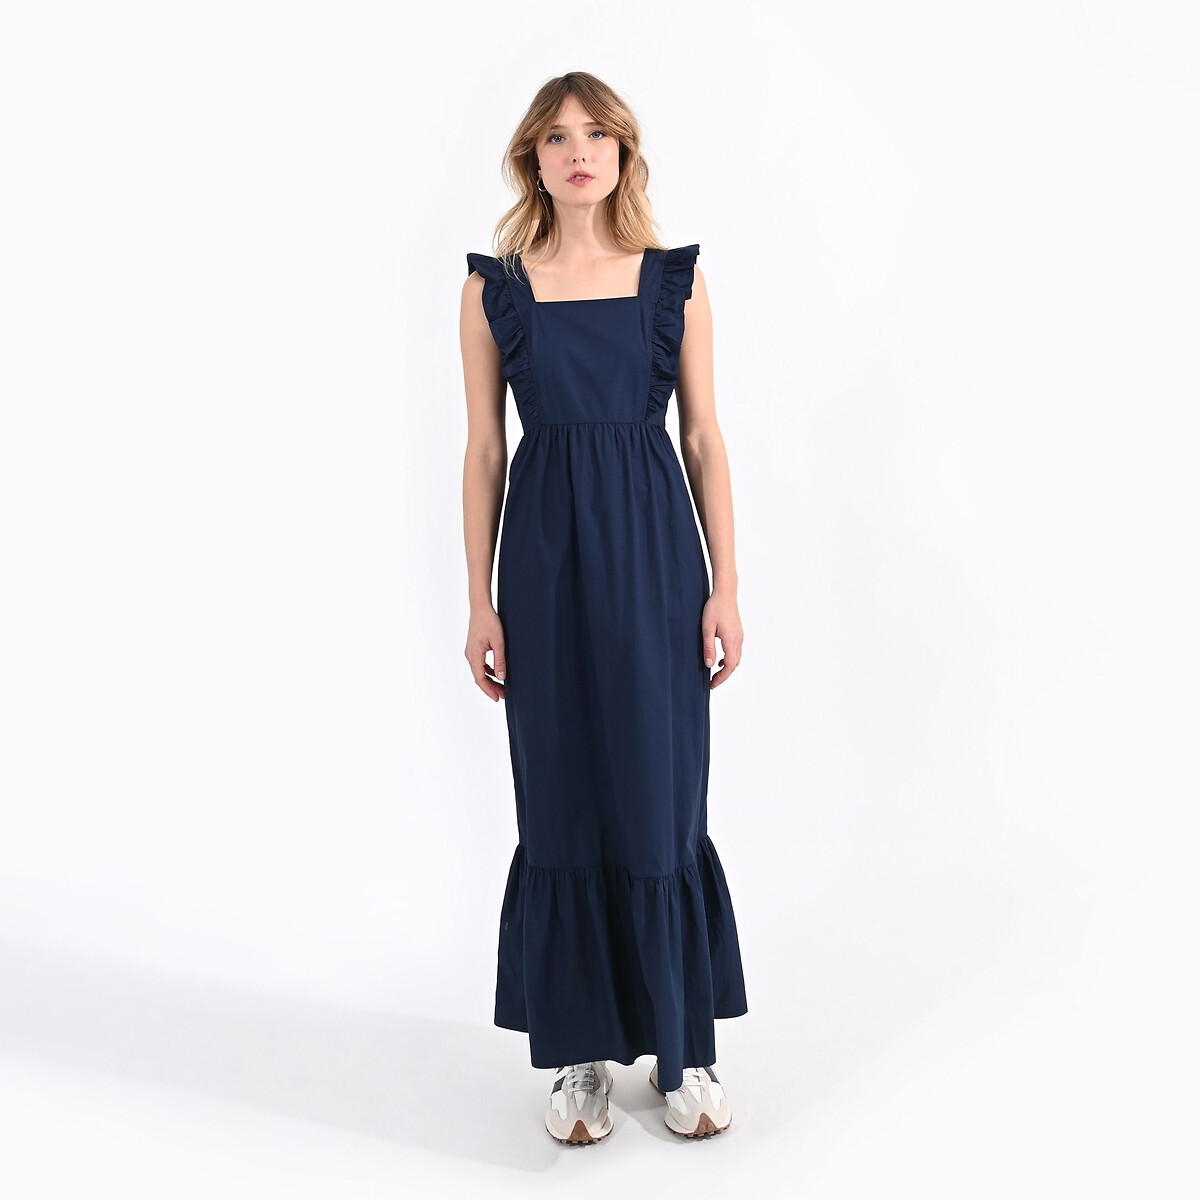 Платье длинное с воланами XL синий платье длинное с тропическим принтом caledonia xl синий